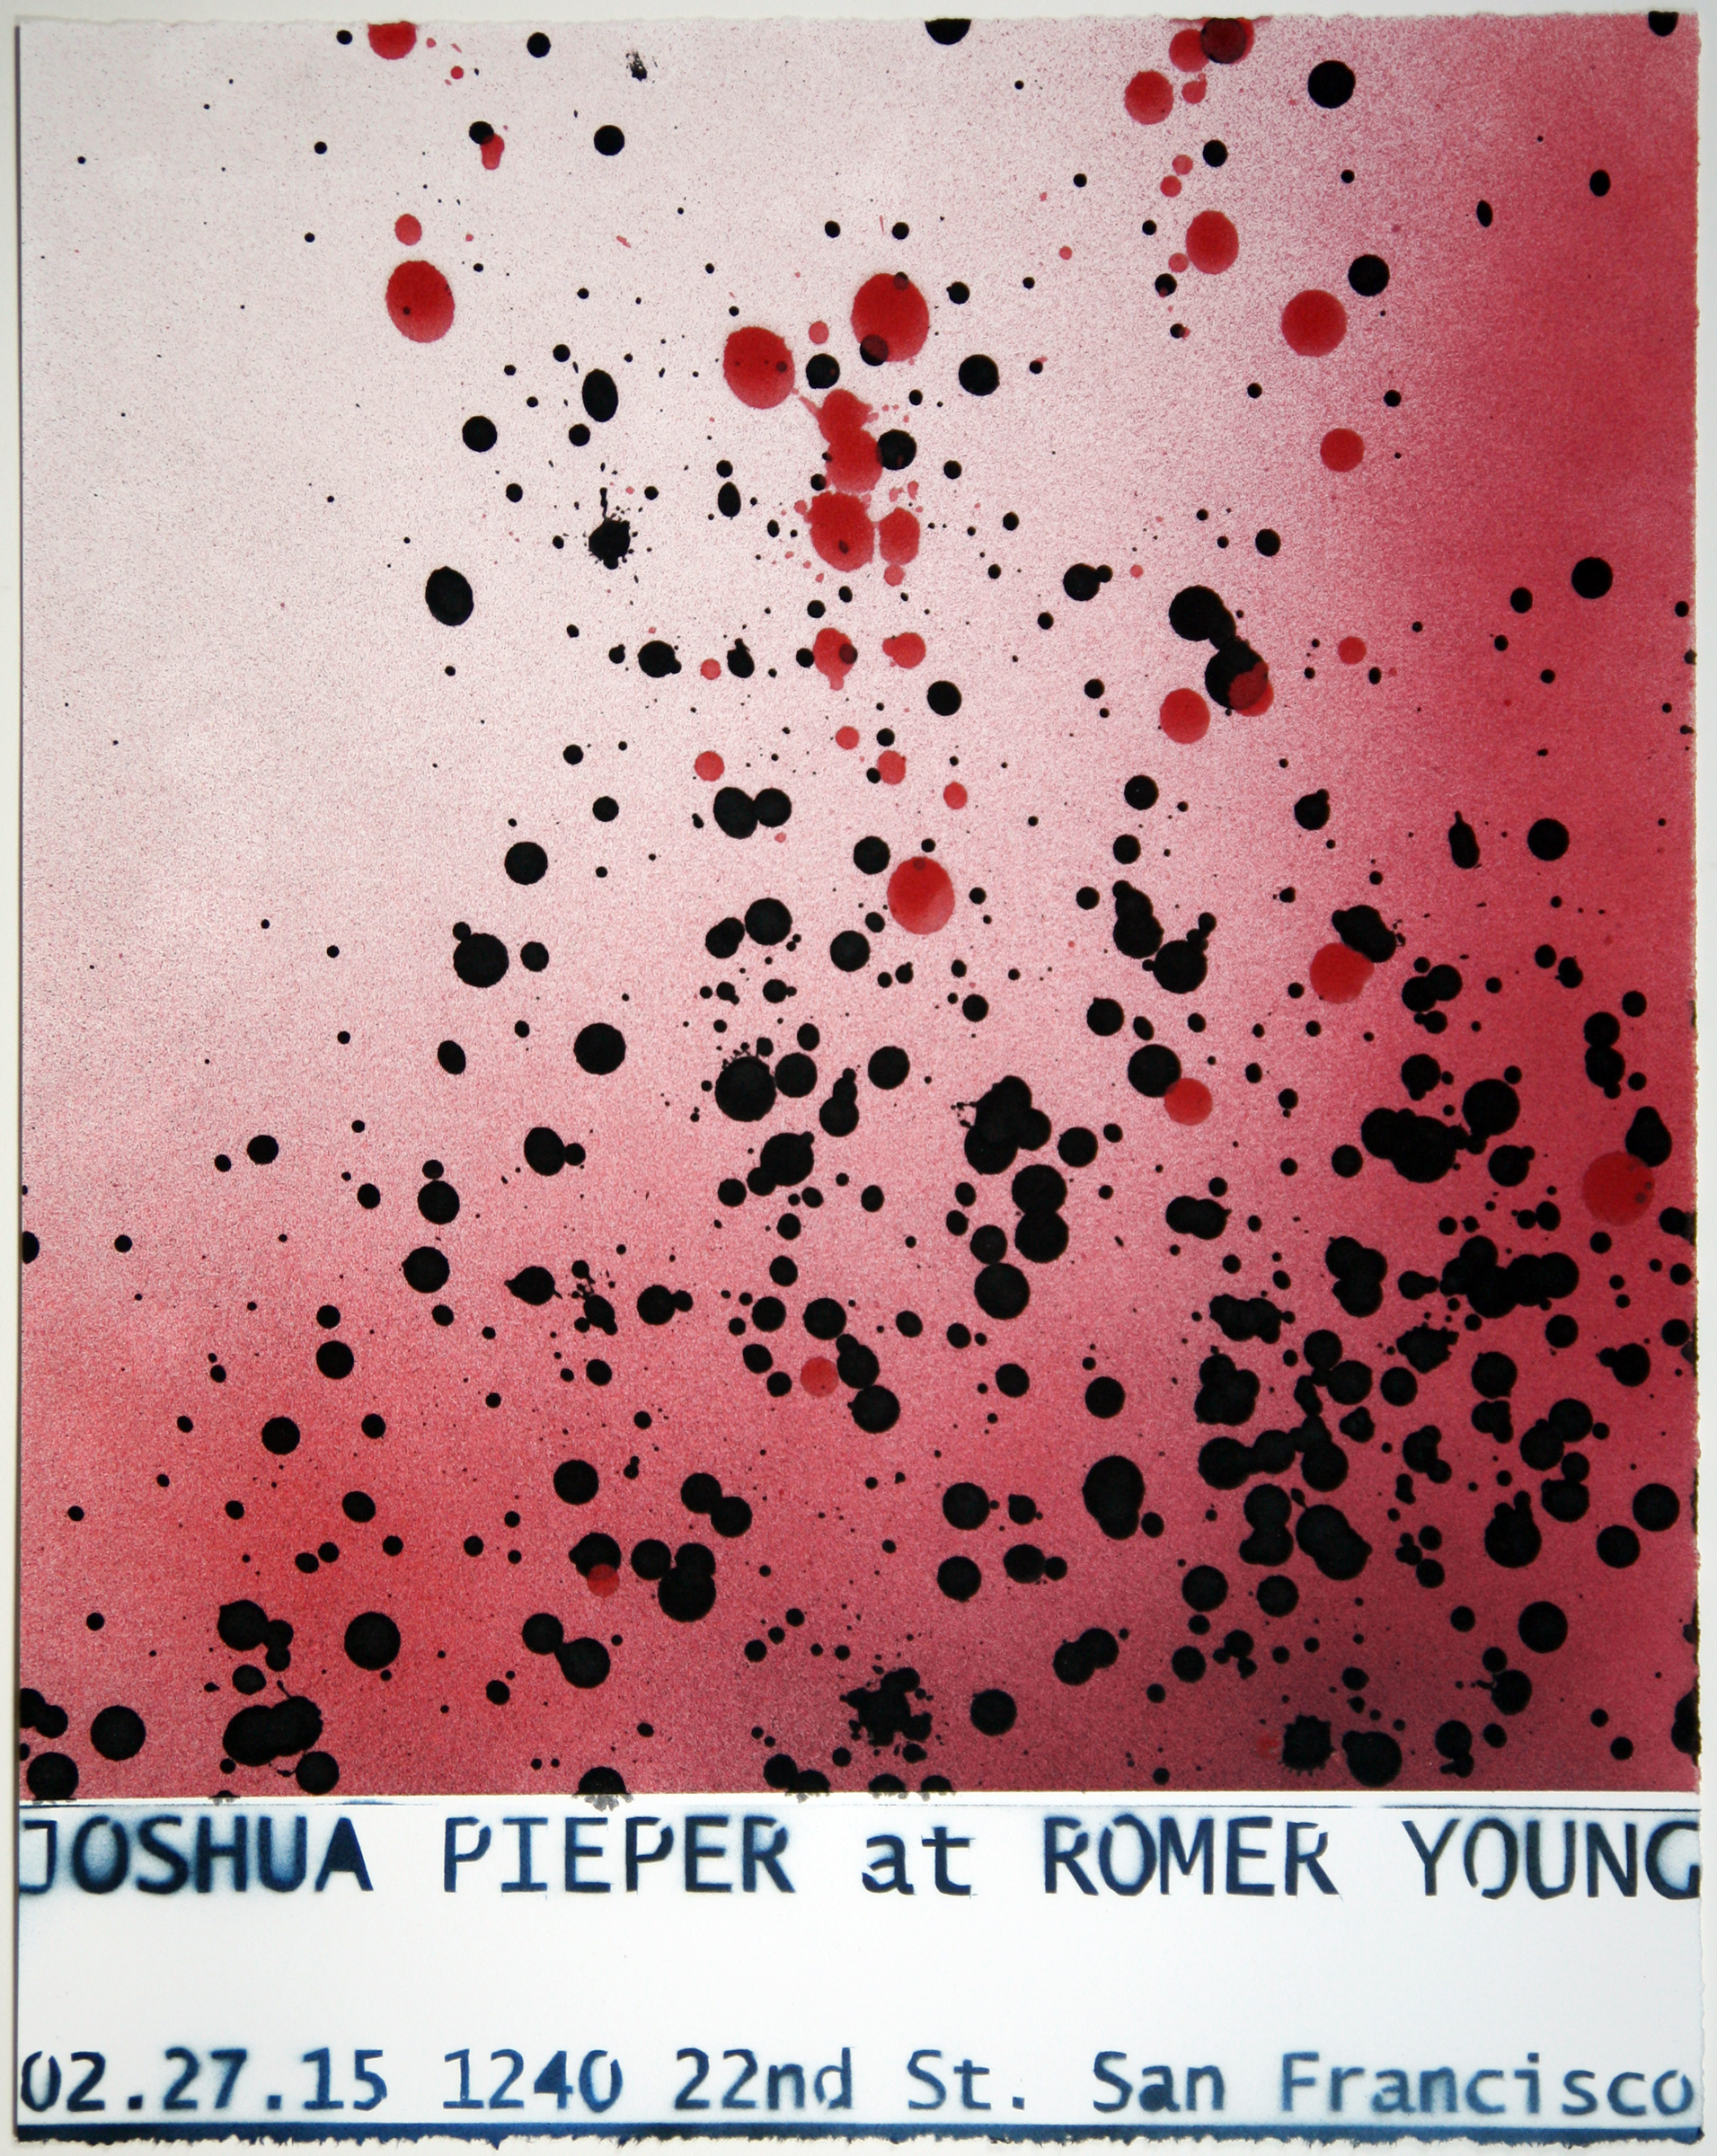   JOSHUA PIEPER   Poster 4 , 2015, spray enamel on cotton rag with frame, 21" x 17" 